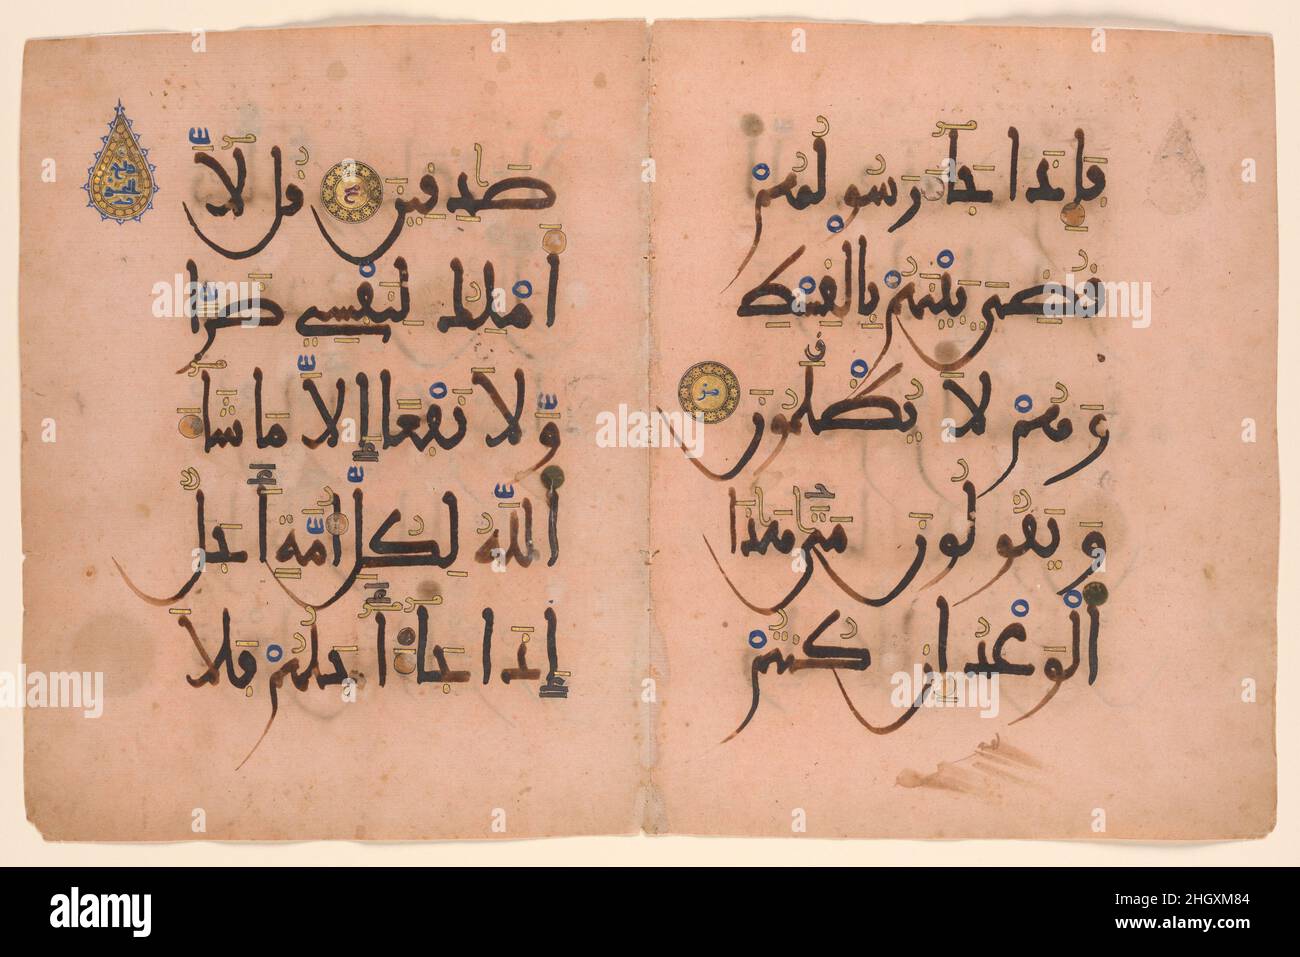 Bifolium du Qur'an rose andalou CA.13th siècle ce bifolio appartient à un manuscrit espagnol du XIIIe siècle appelé le 'Qur'an rose', d'après la teinte de l'article.Chaque folio se compose de cinq lignes de texte en caractères gras maghribi avec des marques diacritiques et de vocalisation en or, soulignées en marron, bleu et vert.Les numéros de verset (Sura 7: Partie de 46–47 et 48–50) apparaissent dans les disques dorés sous la forme de lettres abjad bleues soulignées en blanc (le système abjad attribue des valeurs numériques aux vingt-huit lettres de l'alphabet arabe).La marque de prostration (sajada) est une marque en forme de goutte d'eau ele Banque D'Images